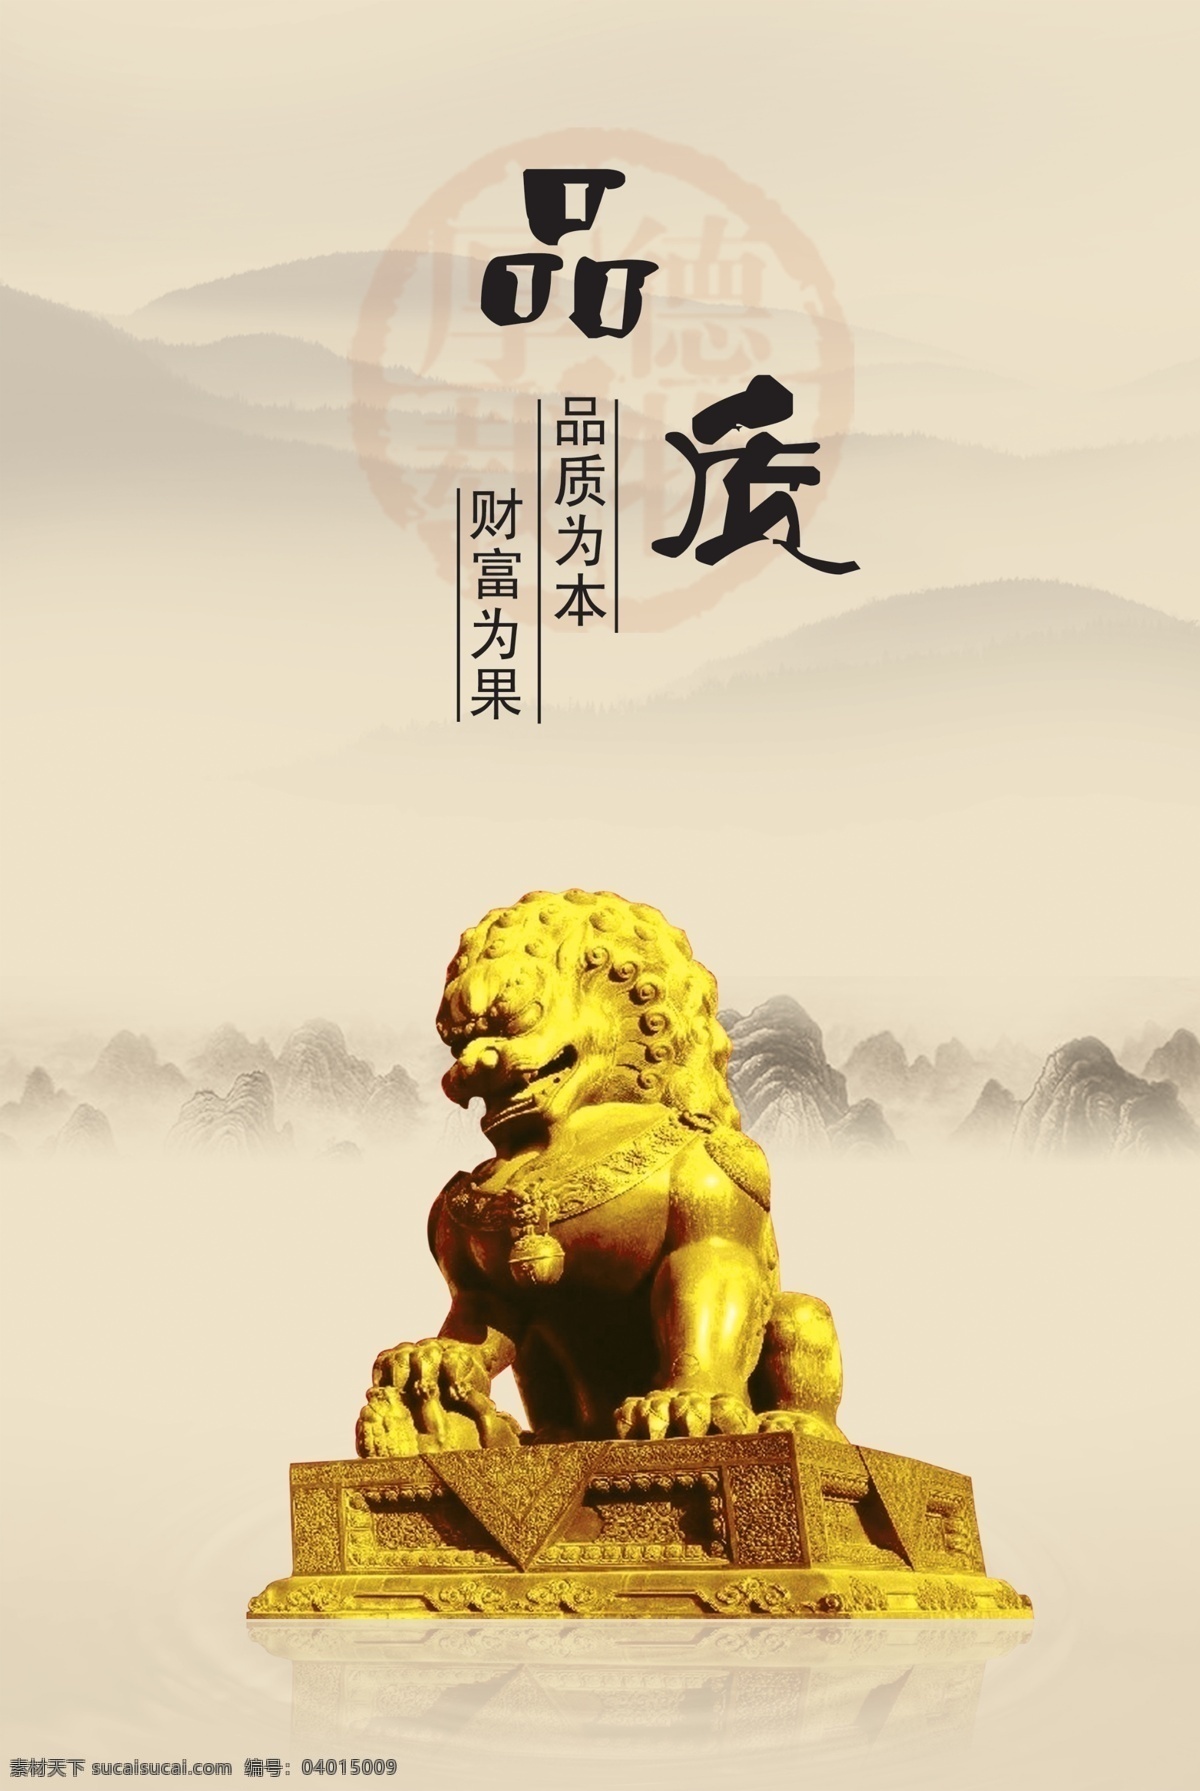 新一代 中国 风 展板 挂画 雄狮 中国风 其他展板设计